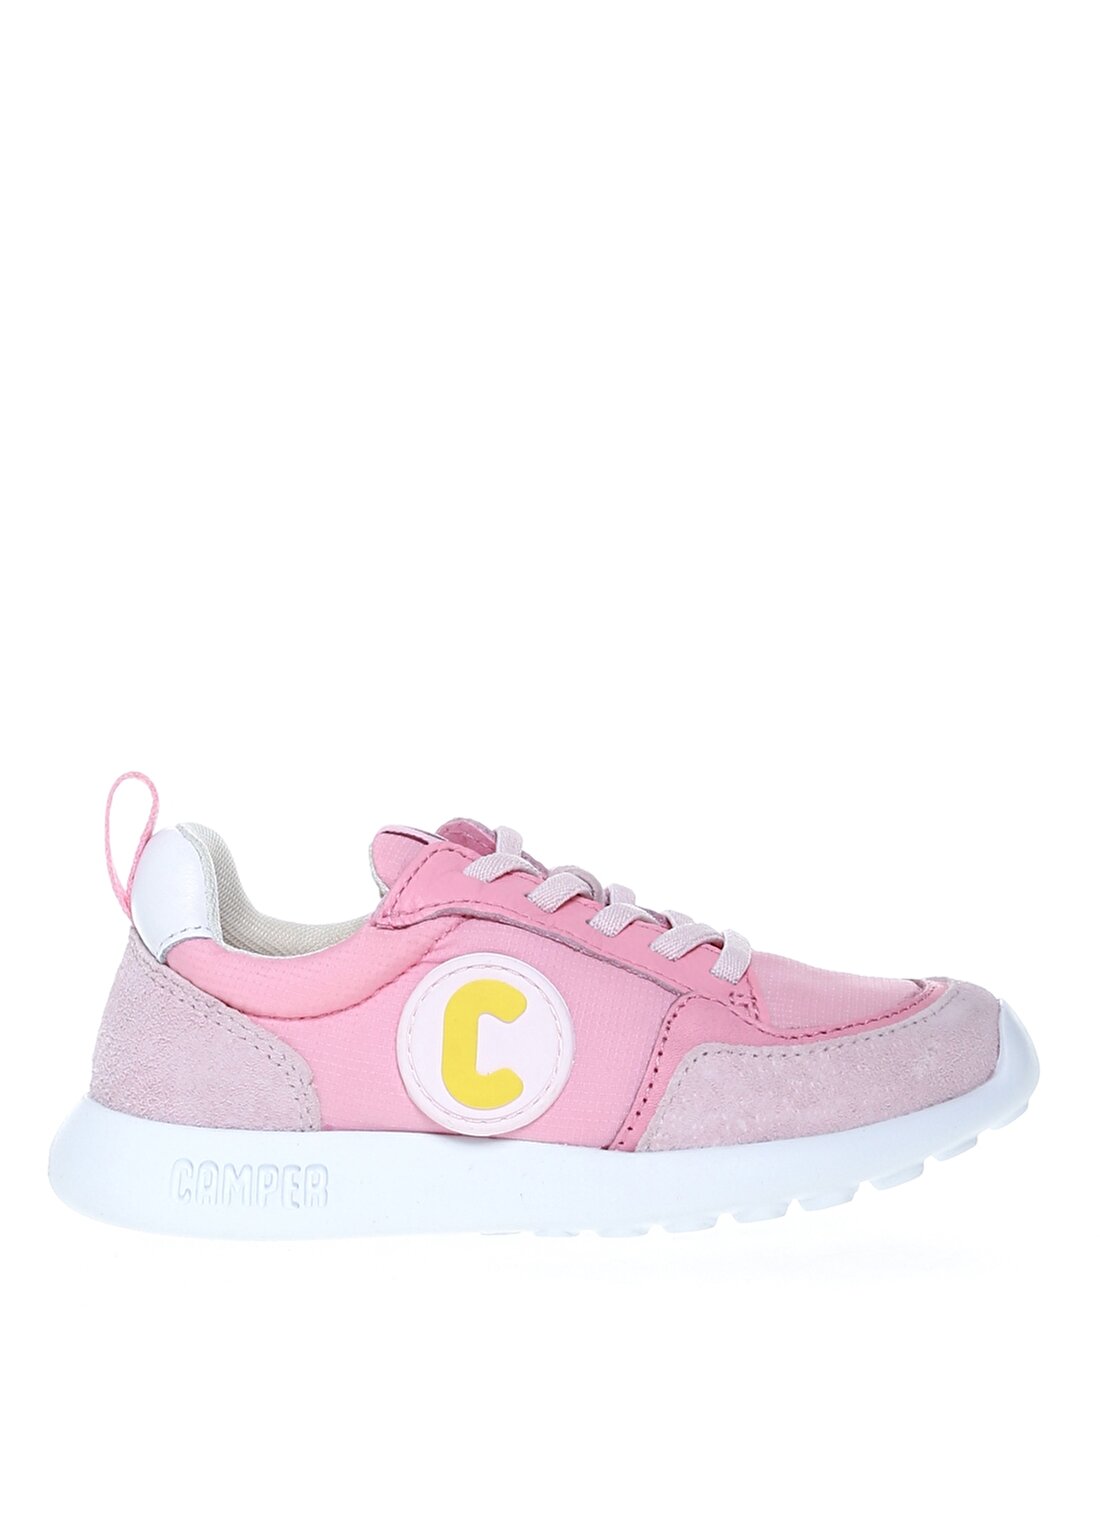 Camper Camper K800422-006 Multi - Assorted Çok Renkli Kız Çocuk Yürüyüş Ayakkabısı Yürüyüş Ayakkabısı